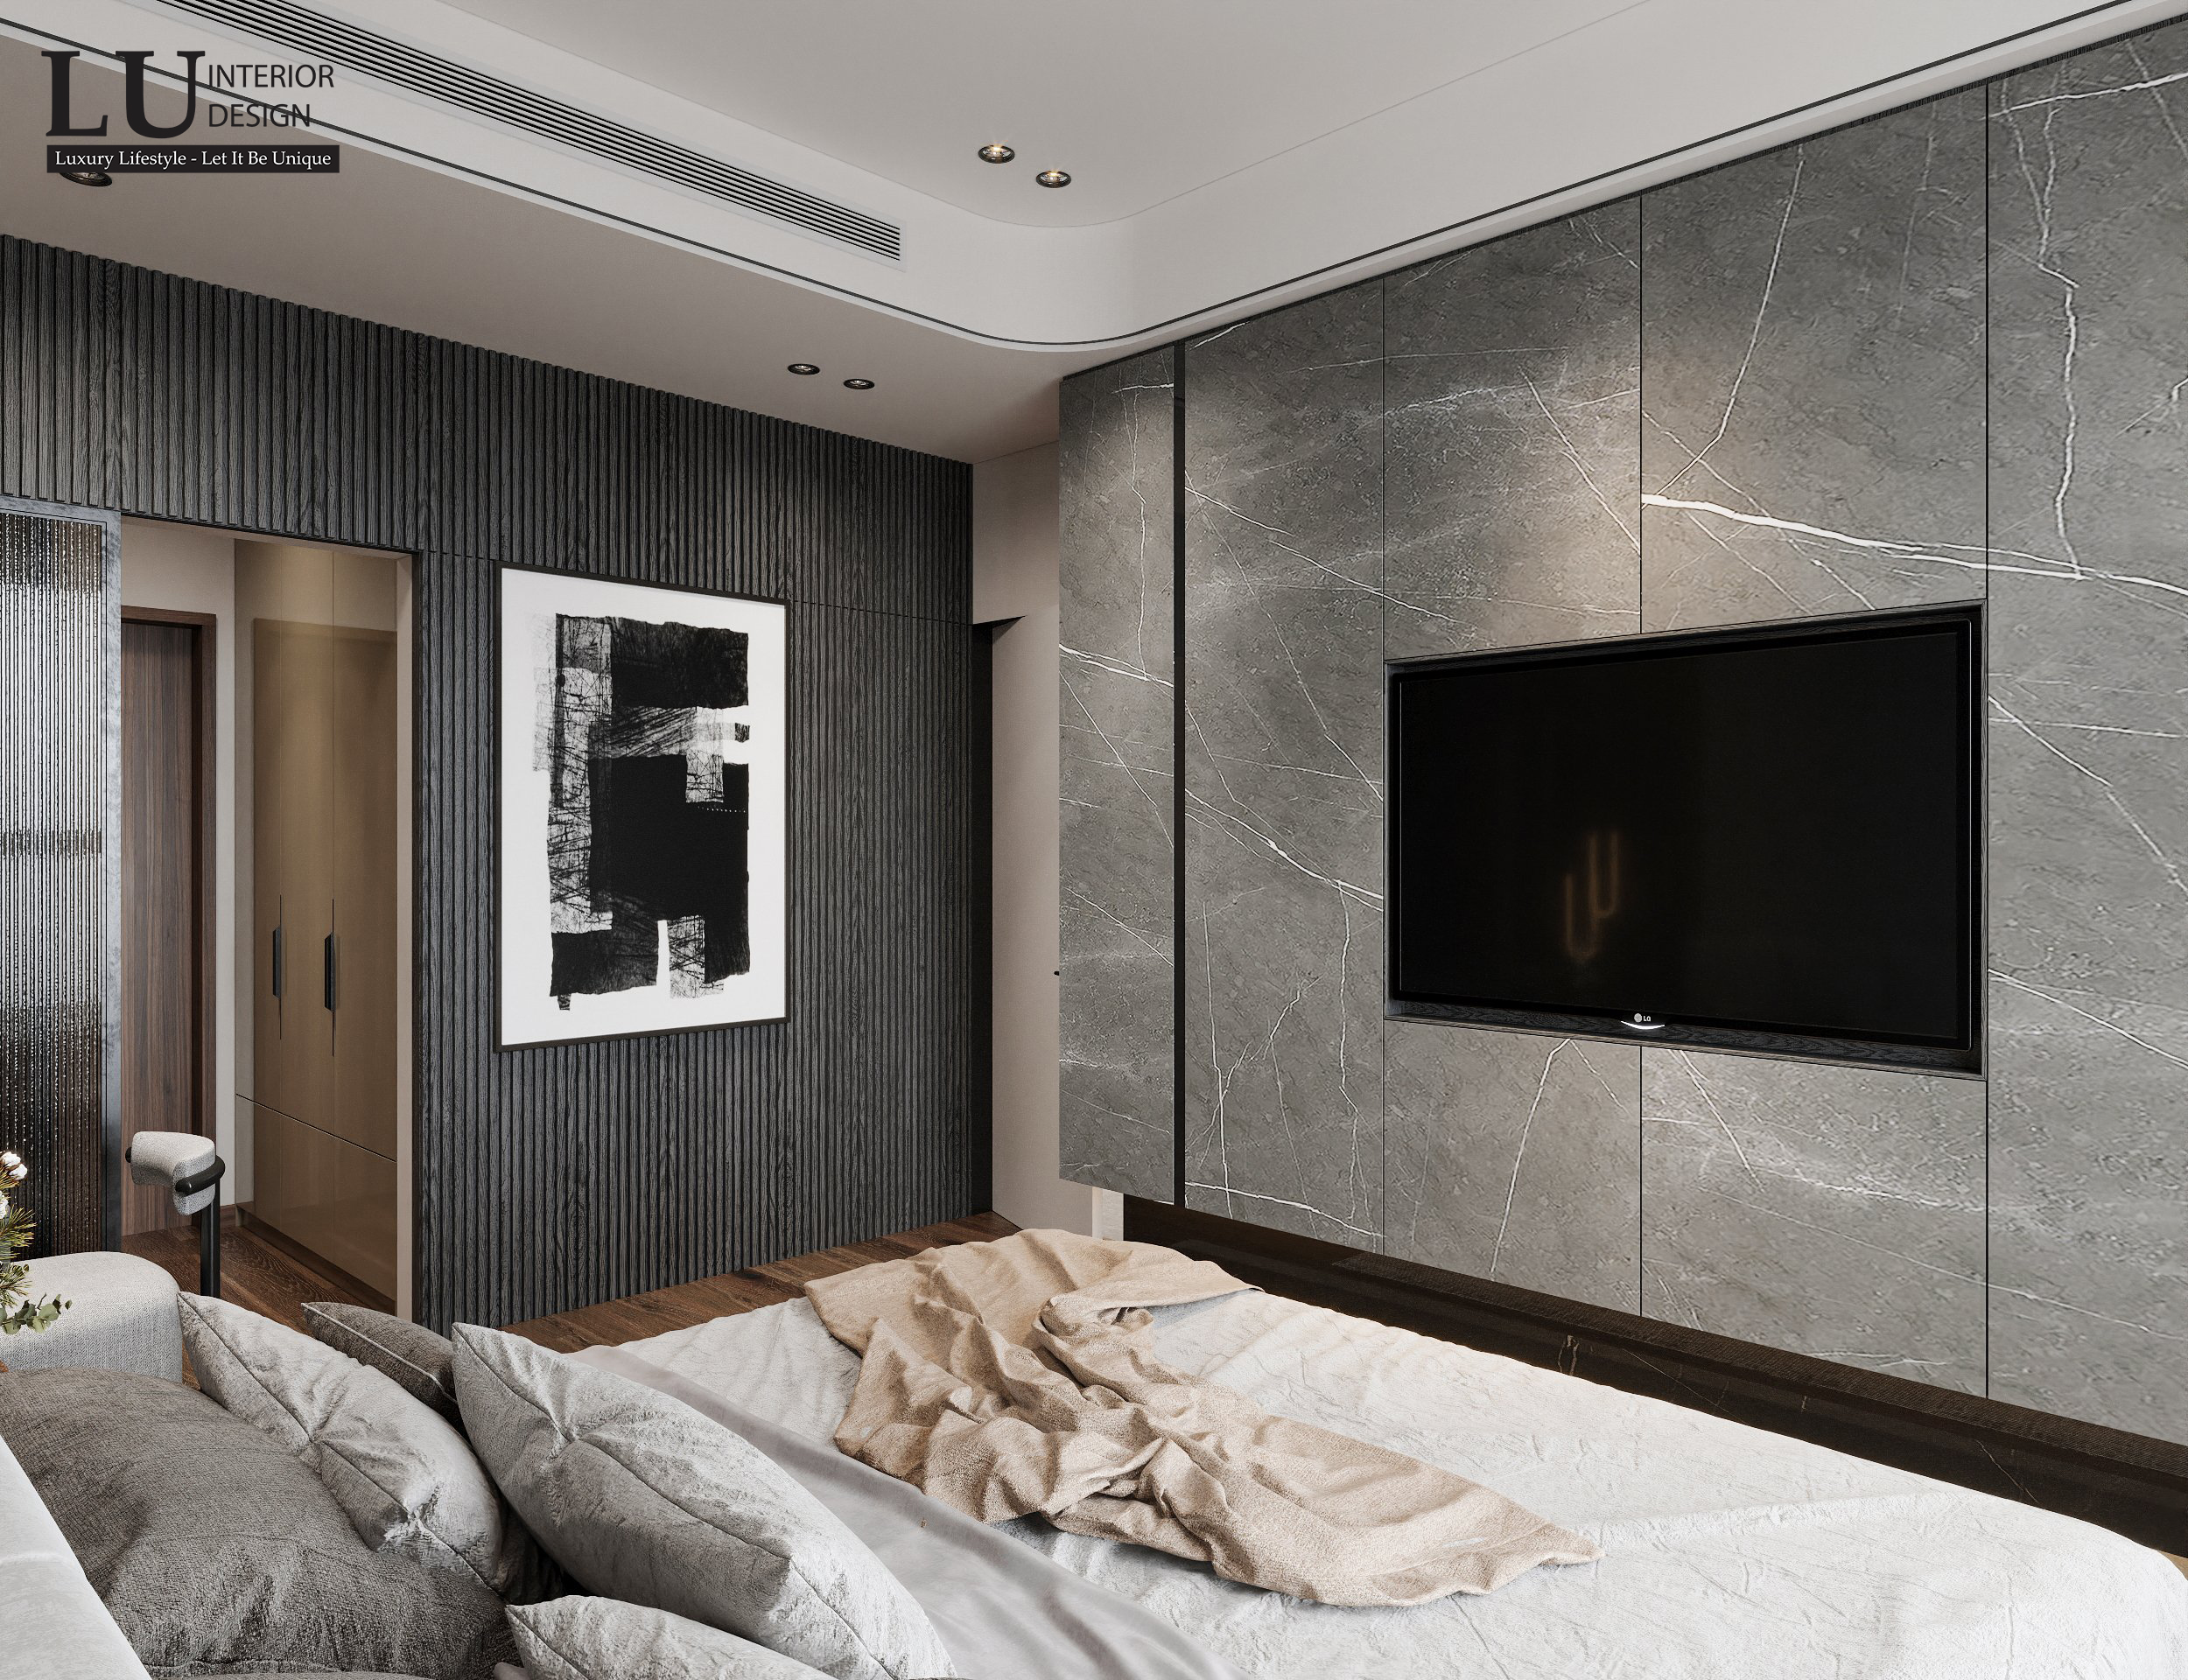 Thiết kế phòng ngủ tối giản nhưng vẫn đảm bảo đầy đủ tiện nghi và sang trọng.